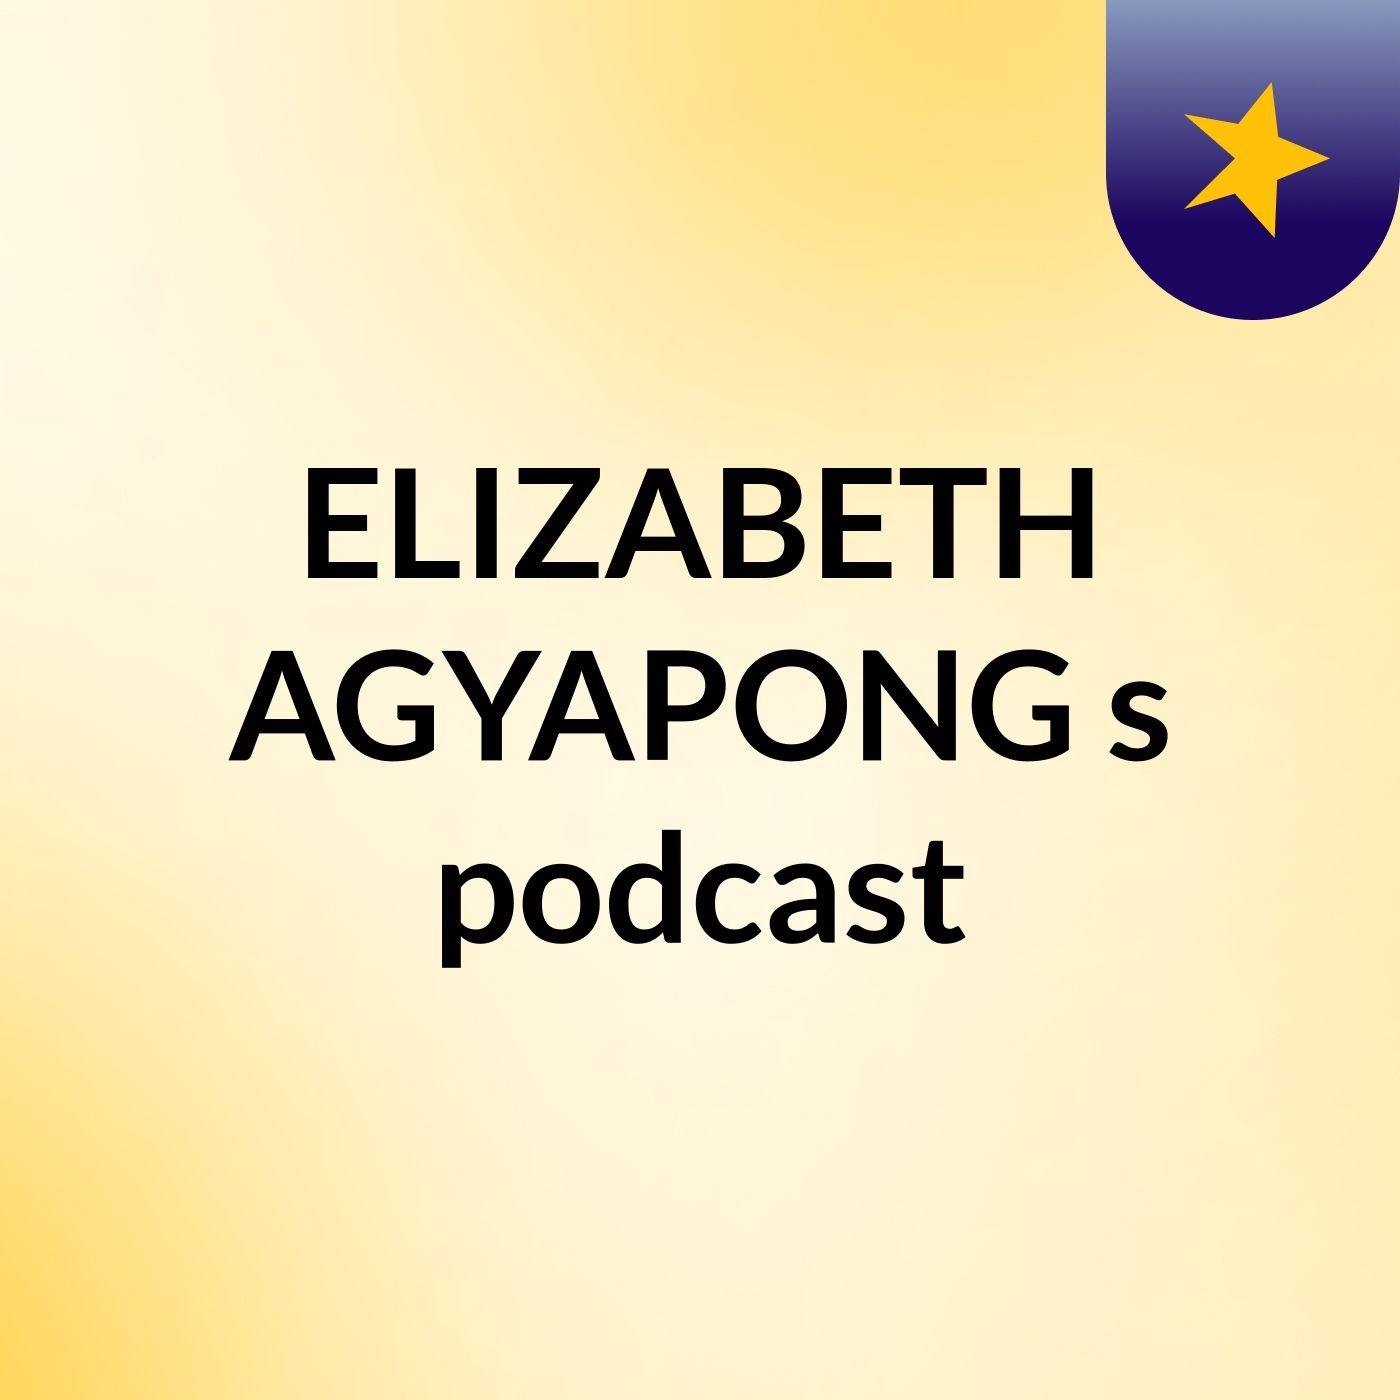 Episode 2 - ELIZABETH AGYAPONG's podcast